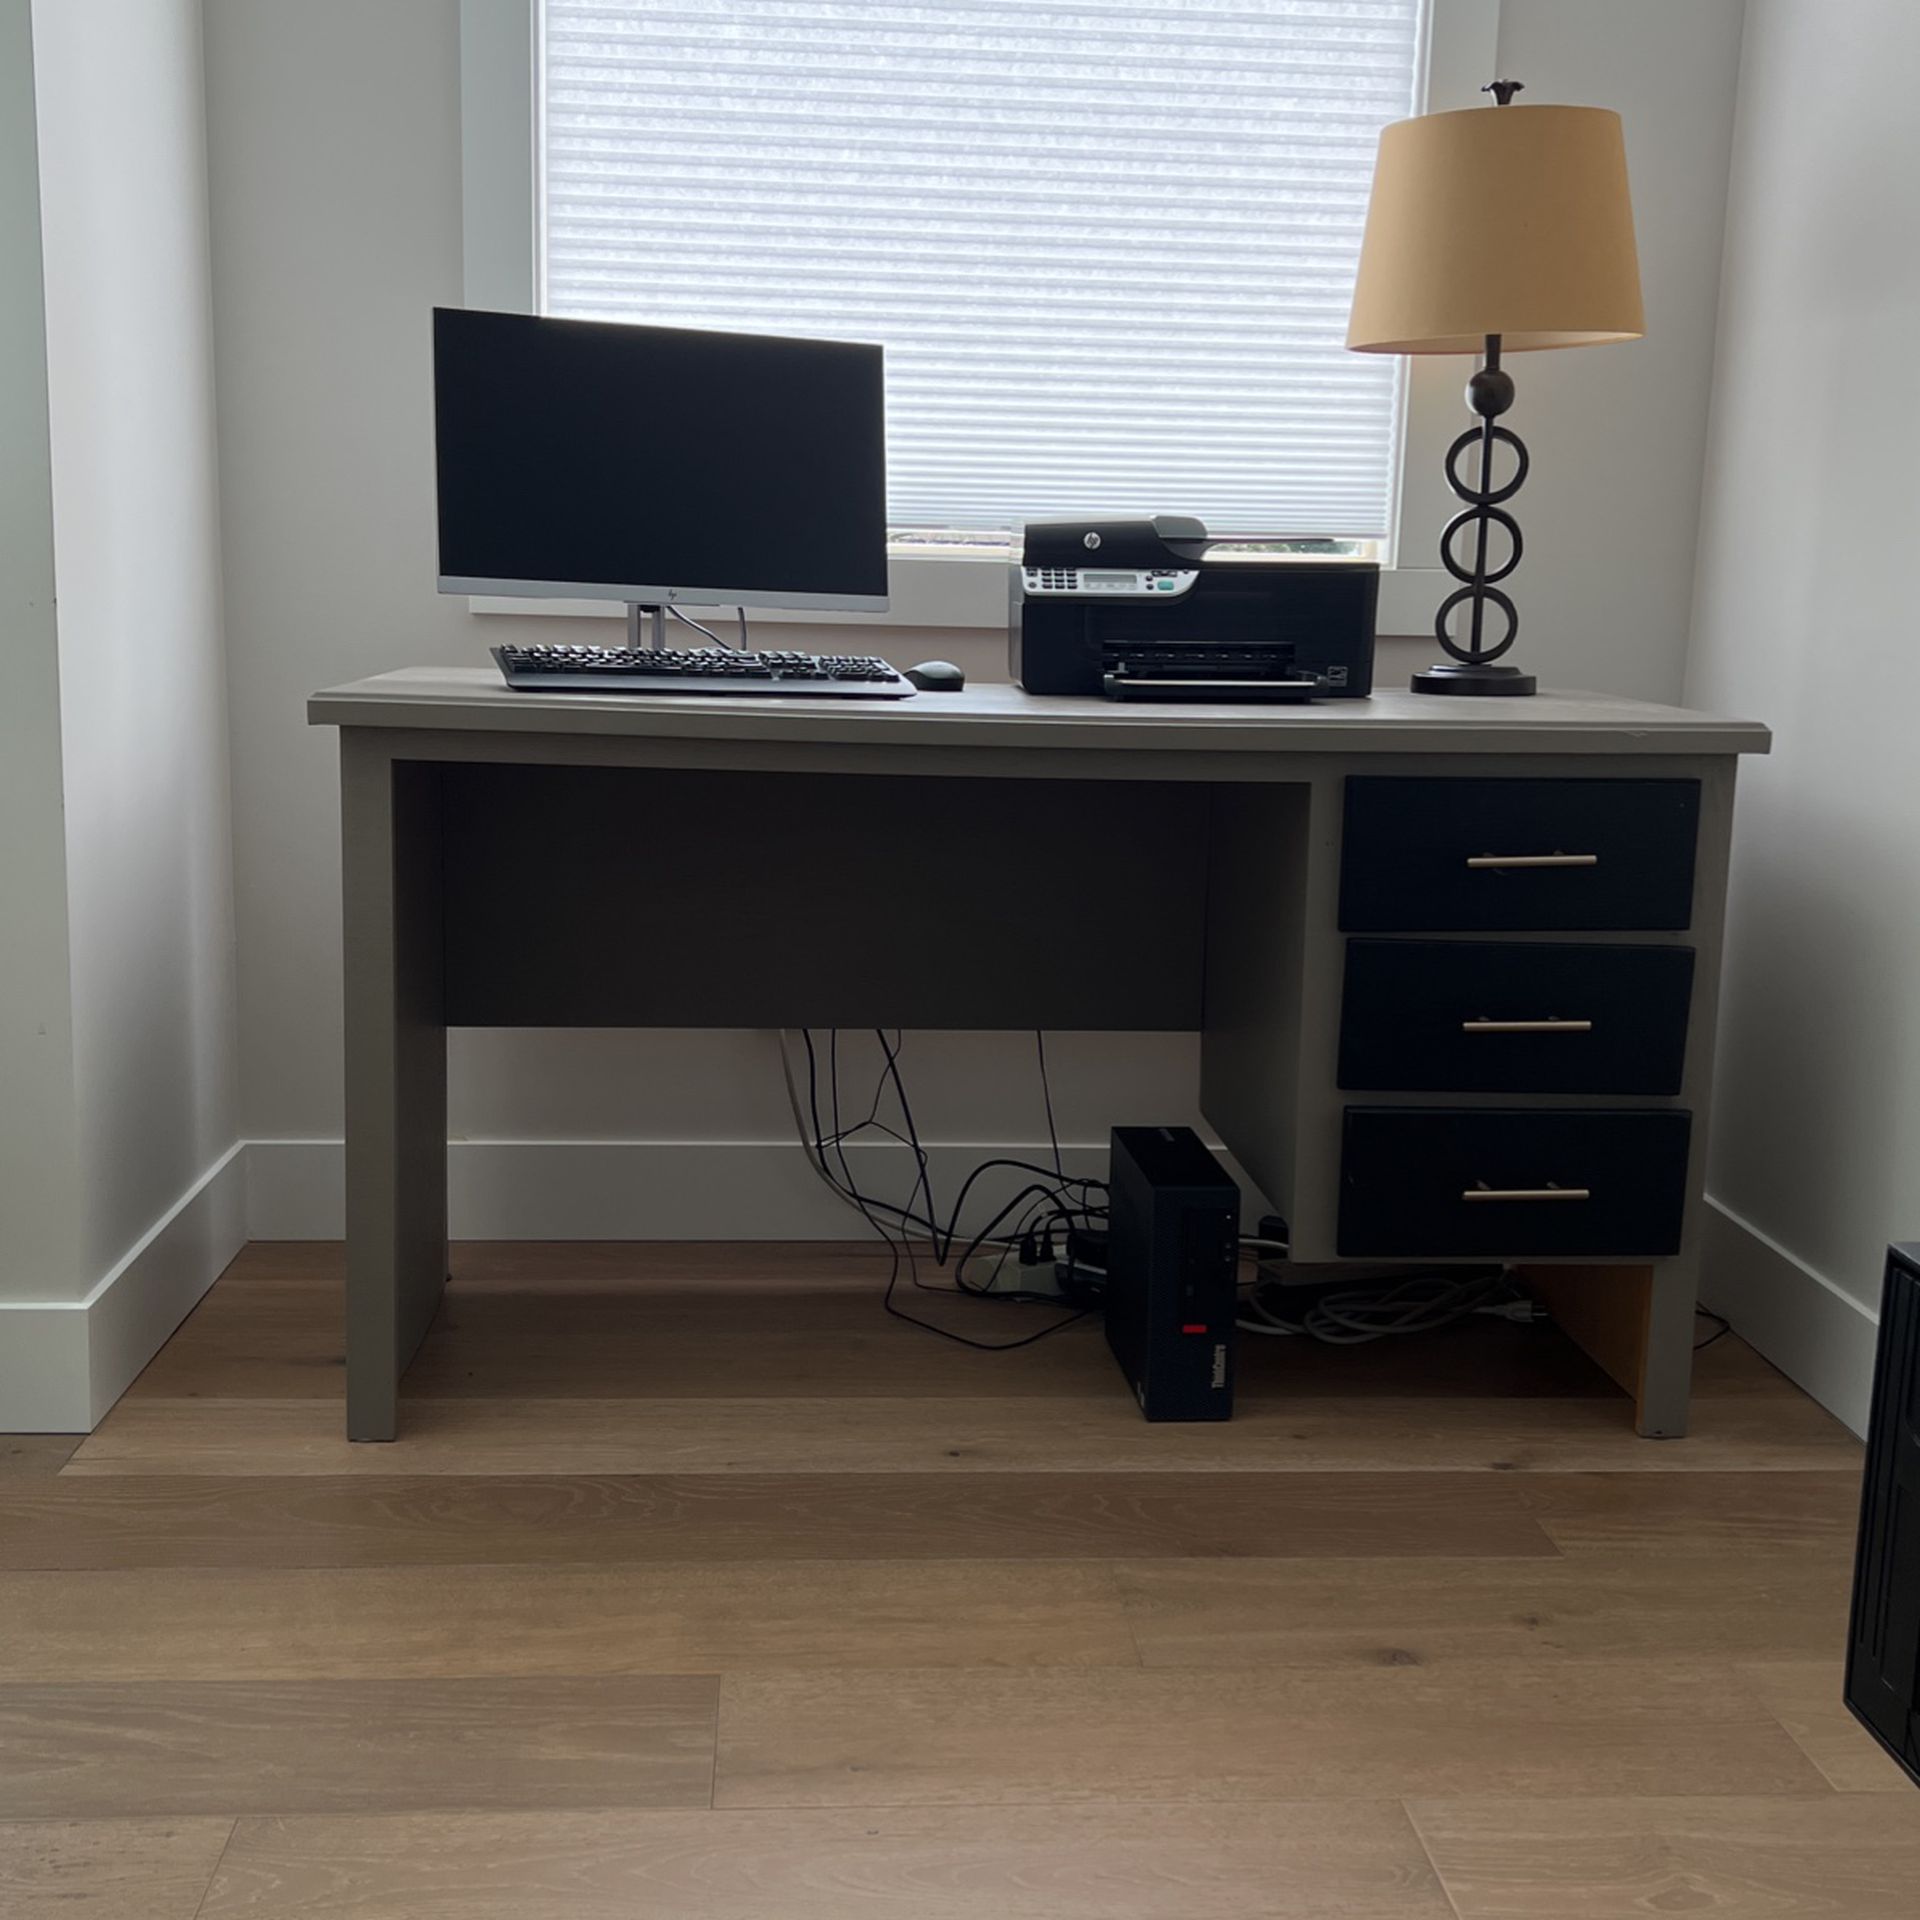 3 Drawer Desk